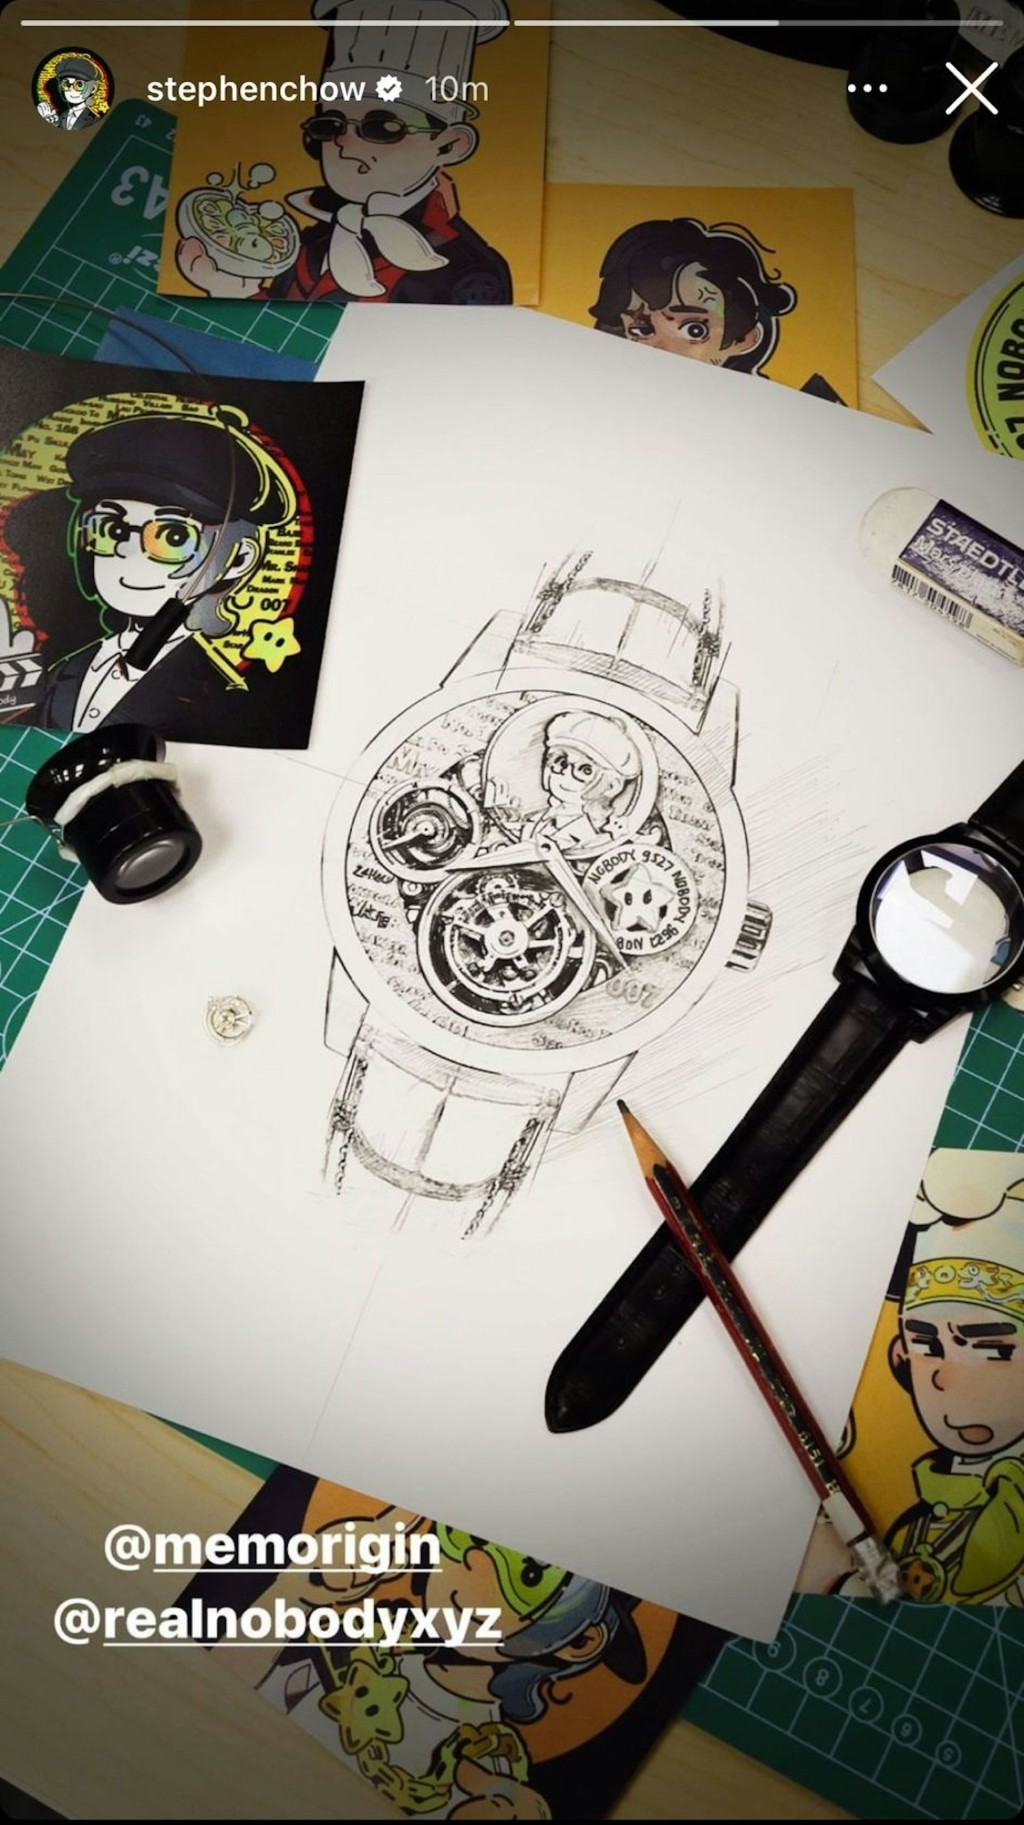 周星驰于社交媒体分享一张手绘手表设计真迹。